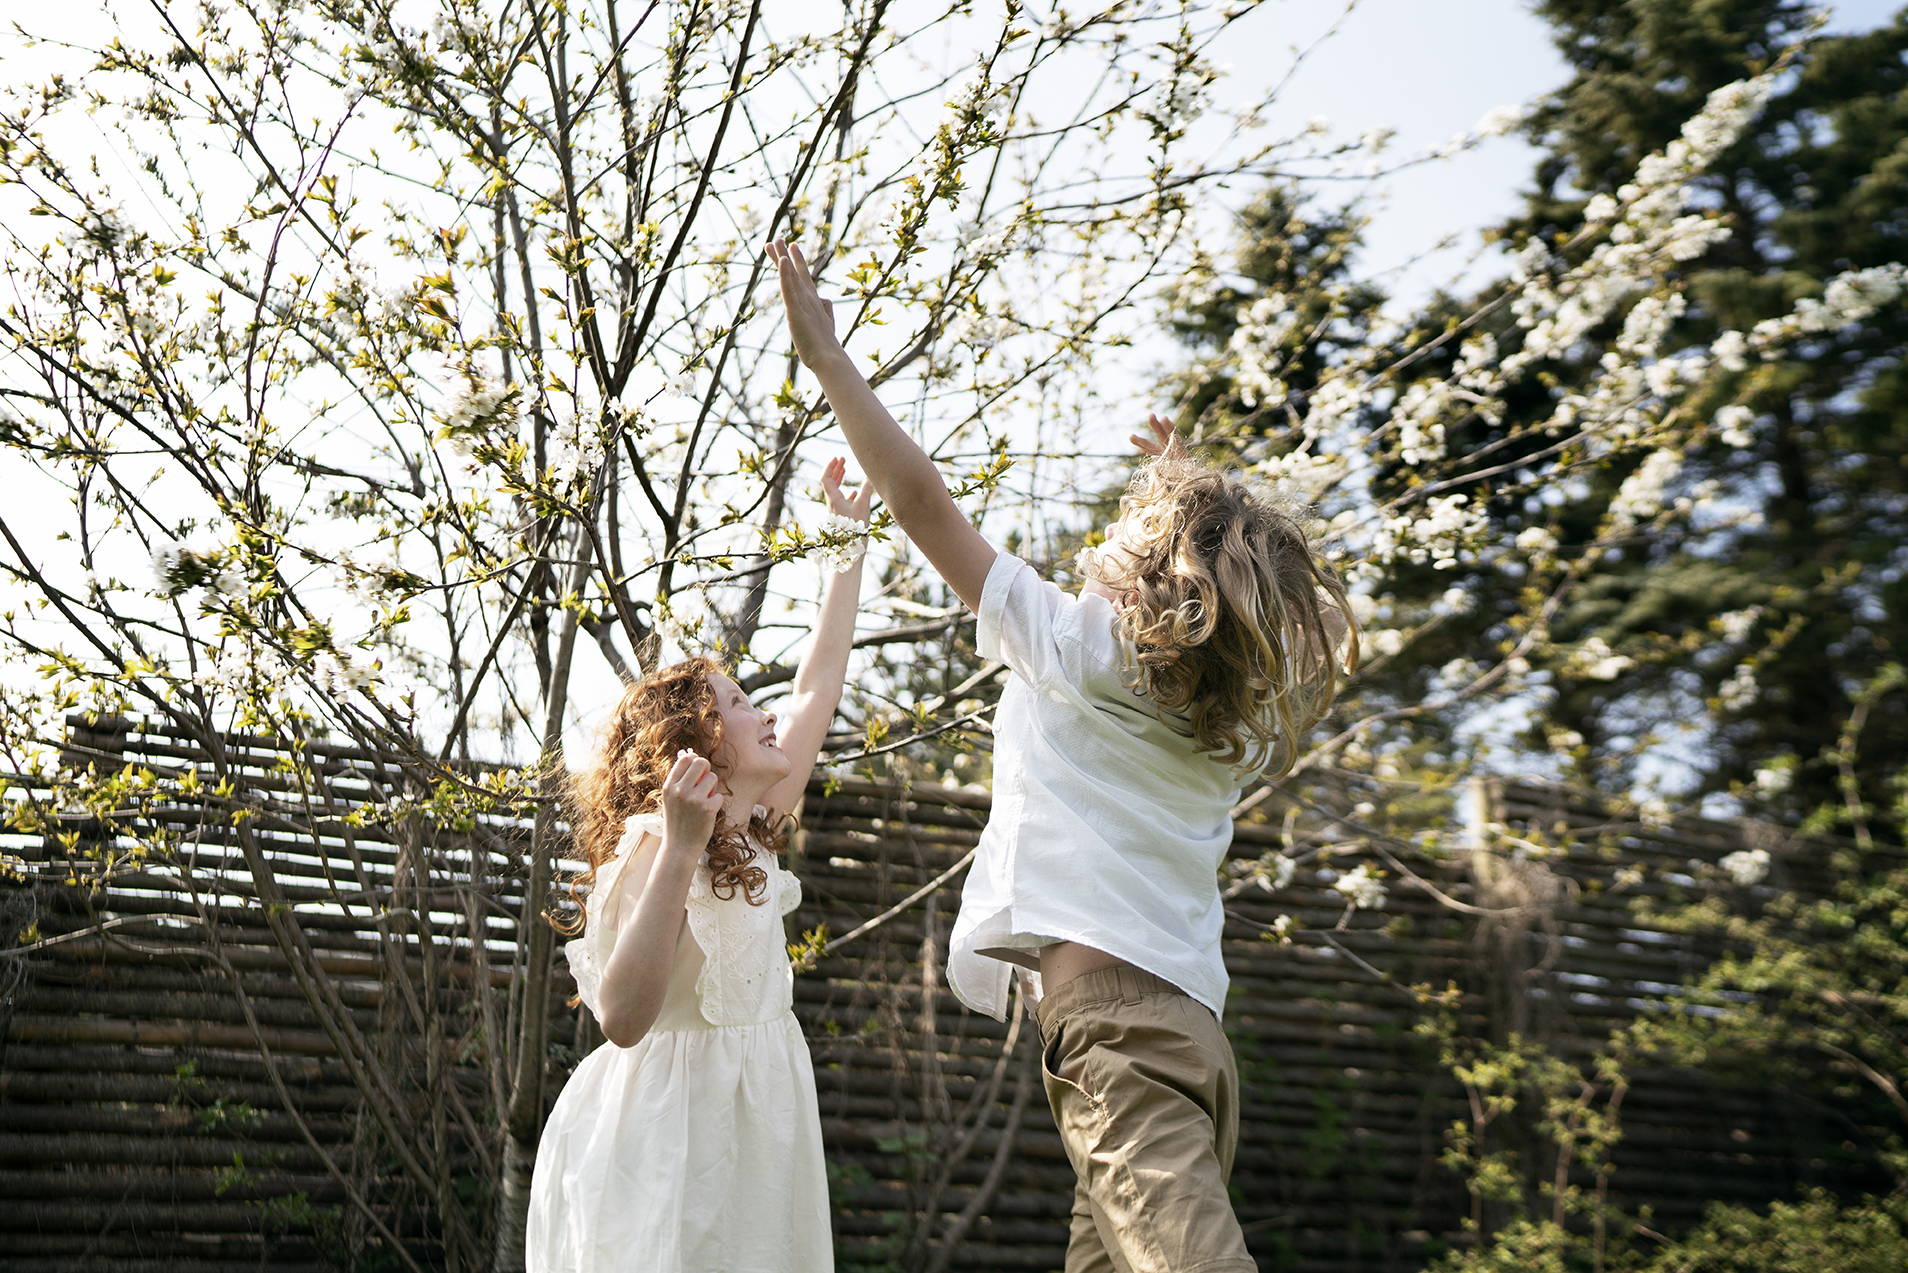 En jente og en gutt leker sammen utendørs, de hopper for å få tak i treets myke, rosa blomster.